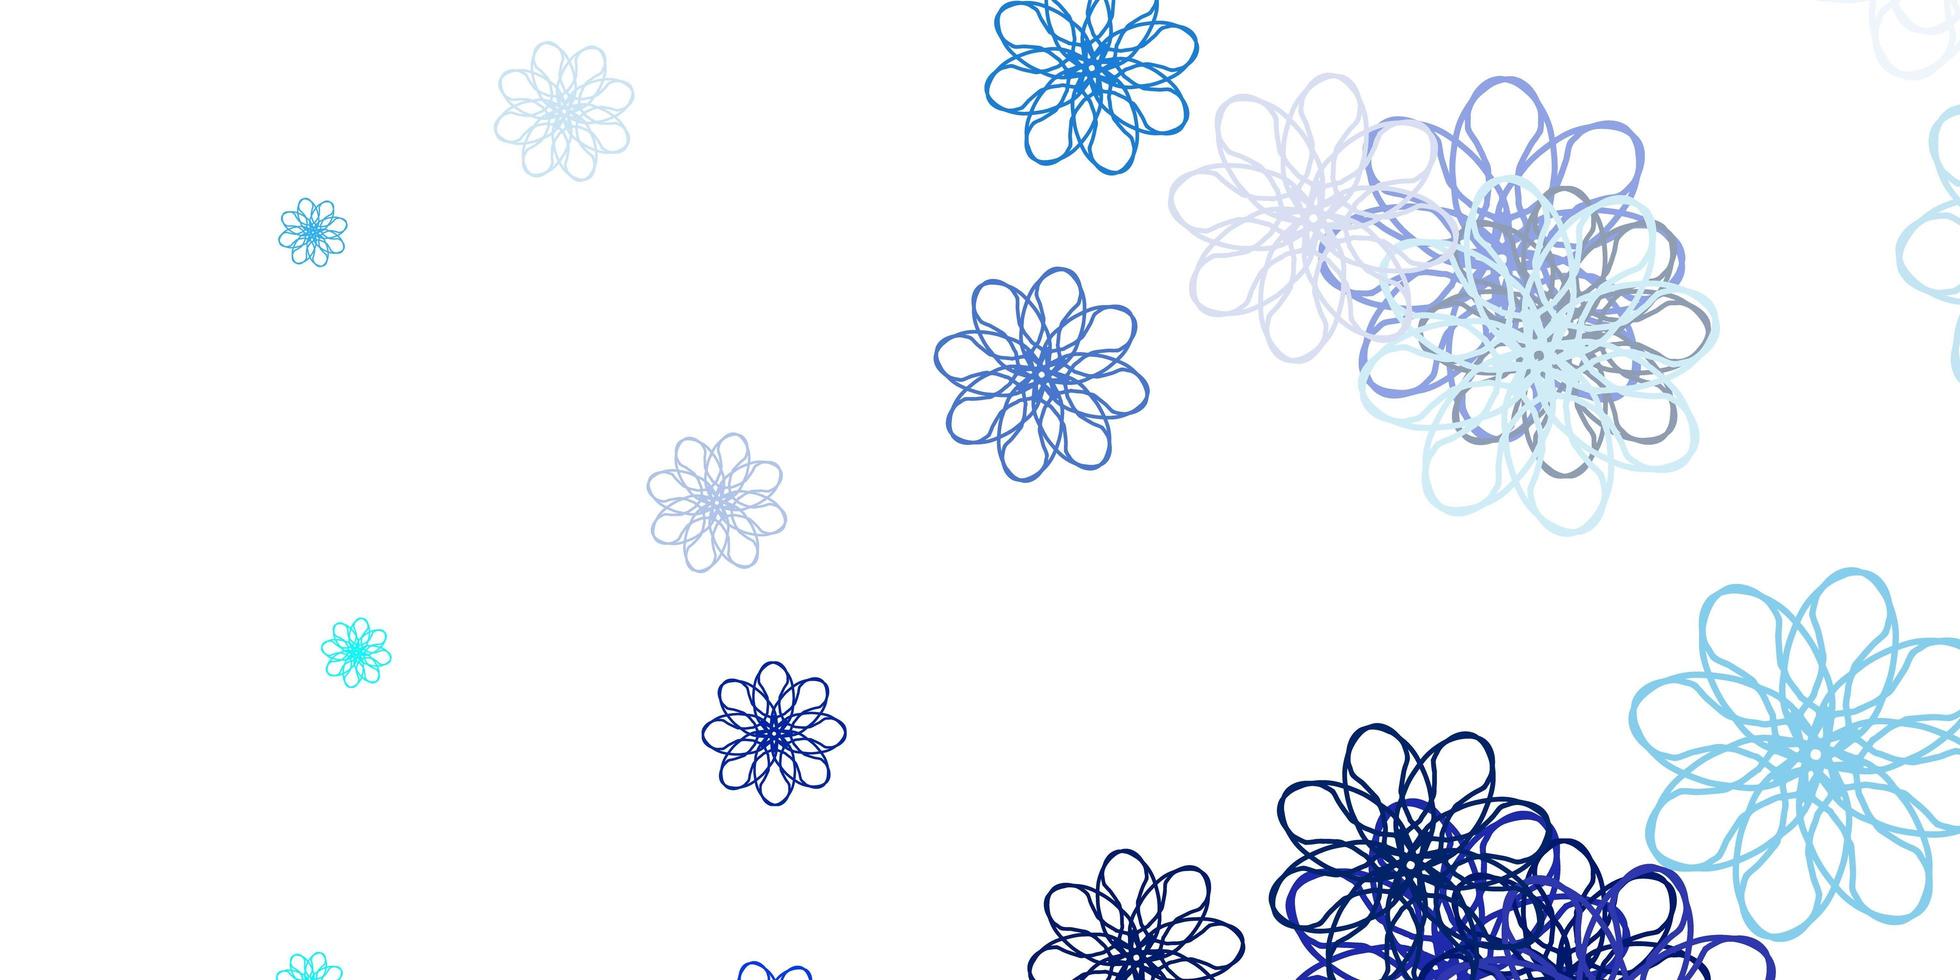 diseño natural de vector azul claro con flores.